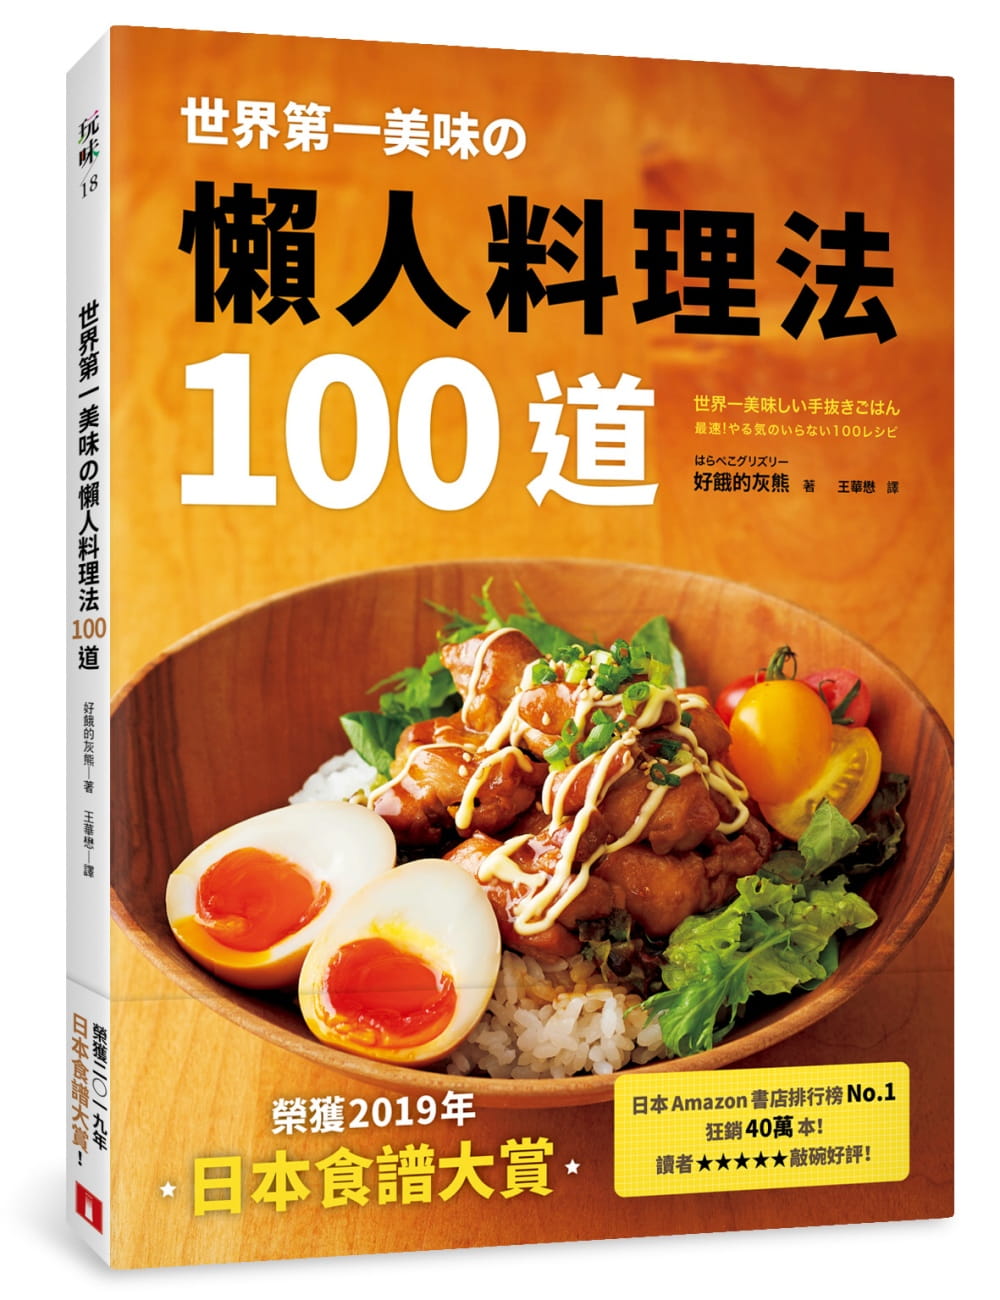 世界第一美味?懶人料理法100道：榮獲2019年「日本食譜大賞」！美味再升級！簡單更進化！不管誰來做，都能百分百成功！即使偷懶，做出來也一樣好吃！